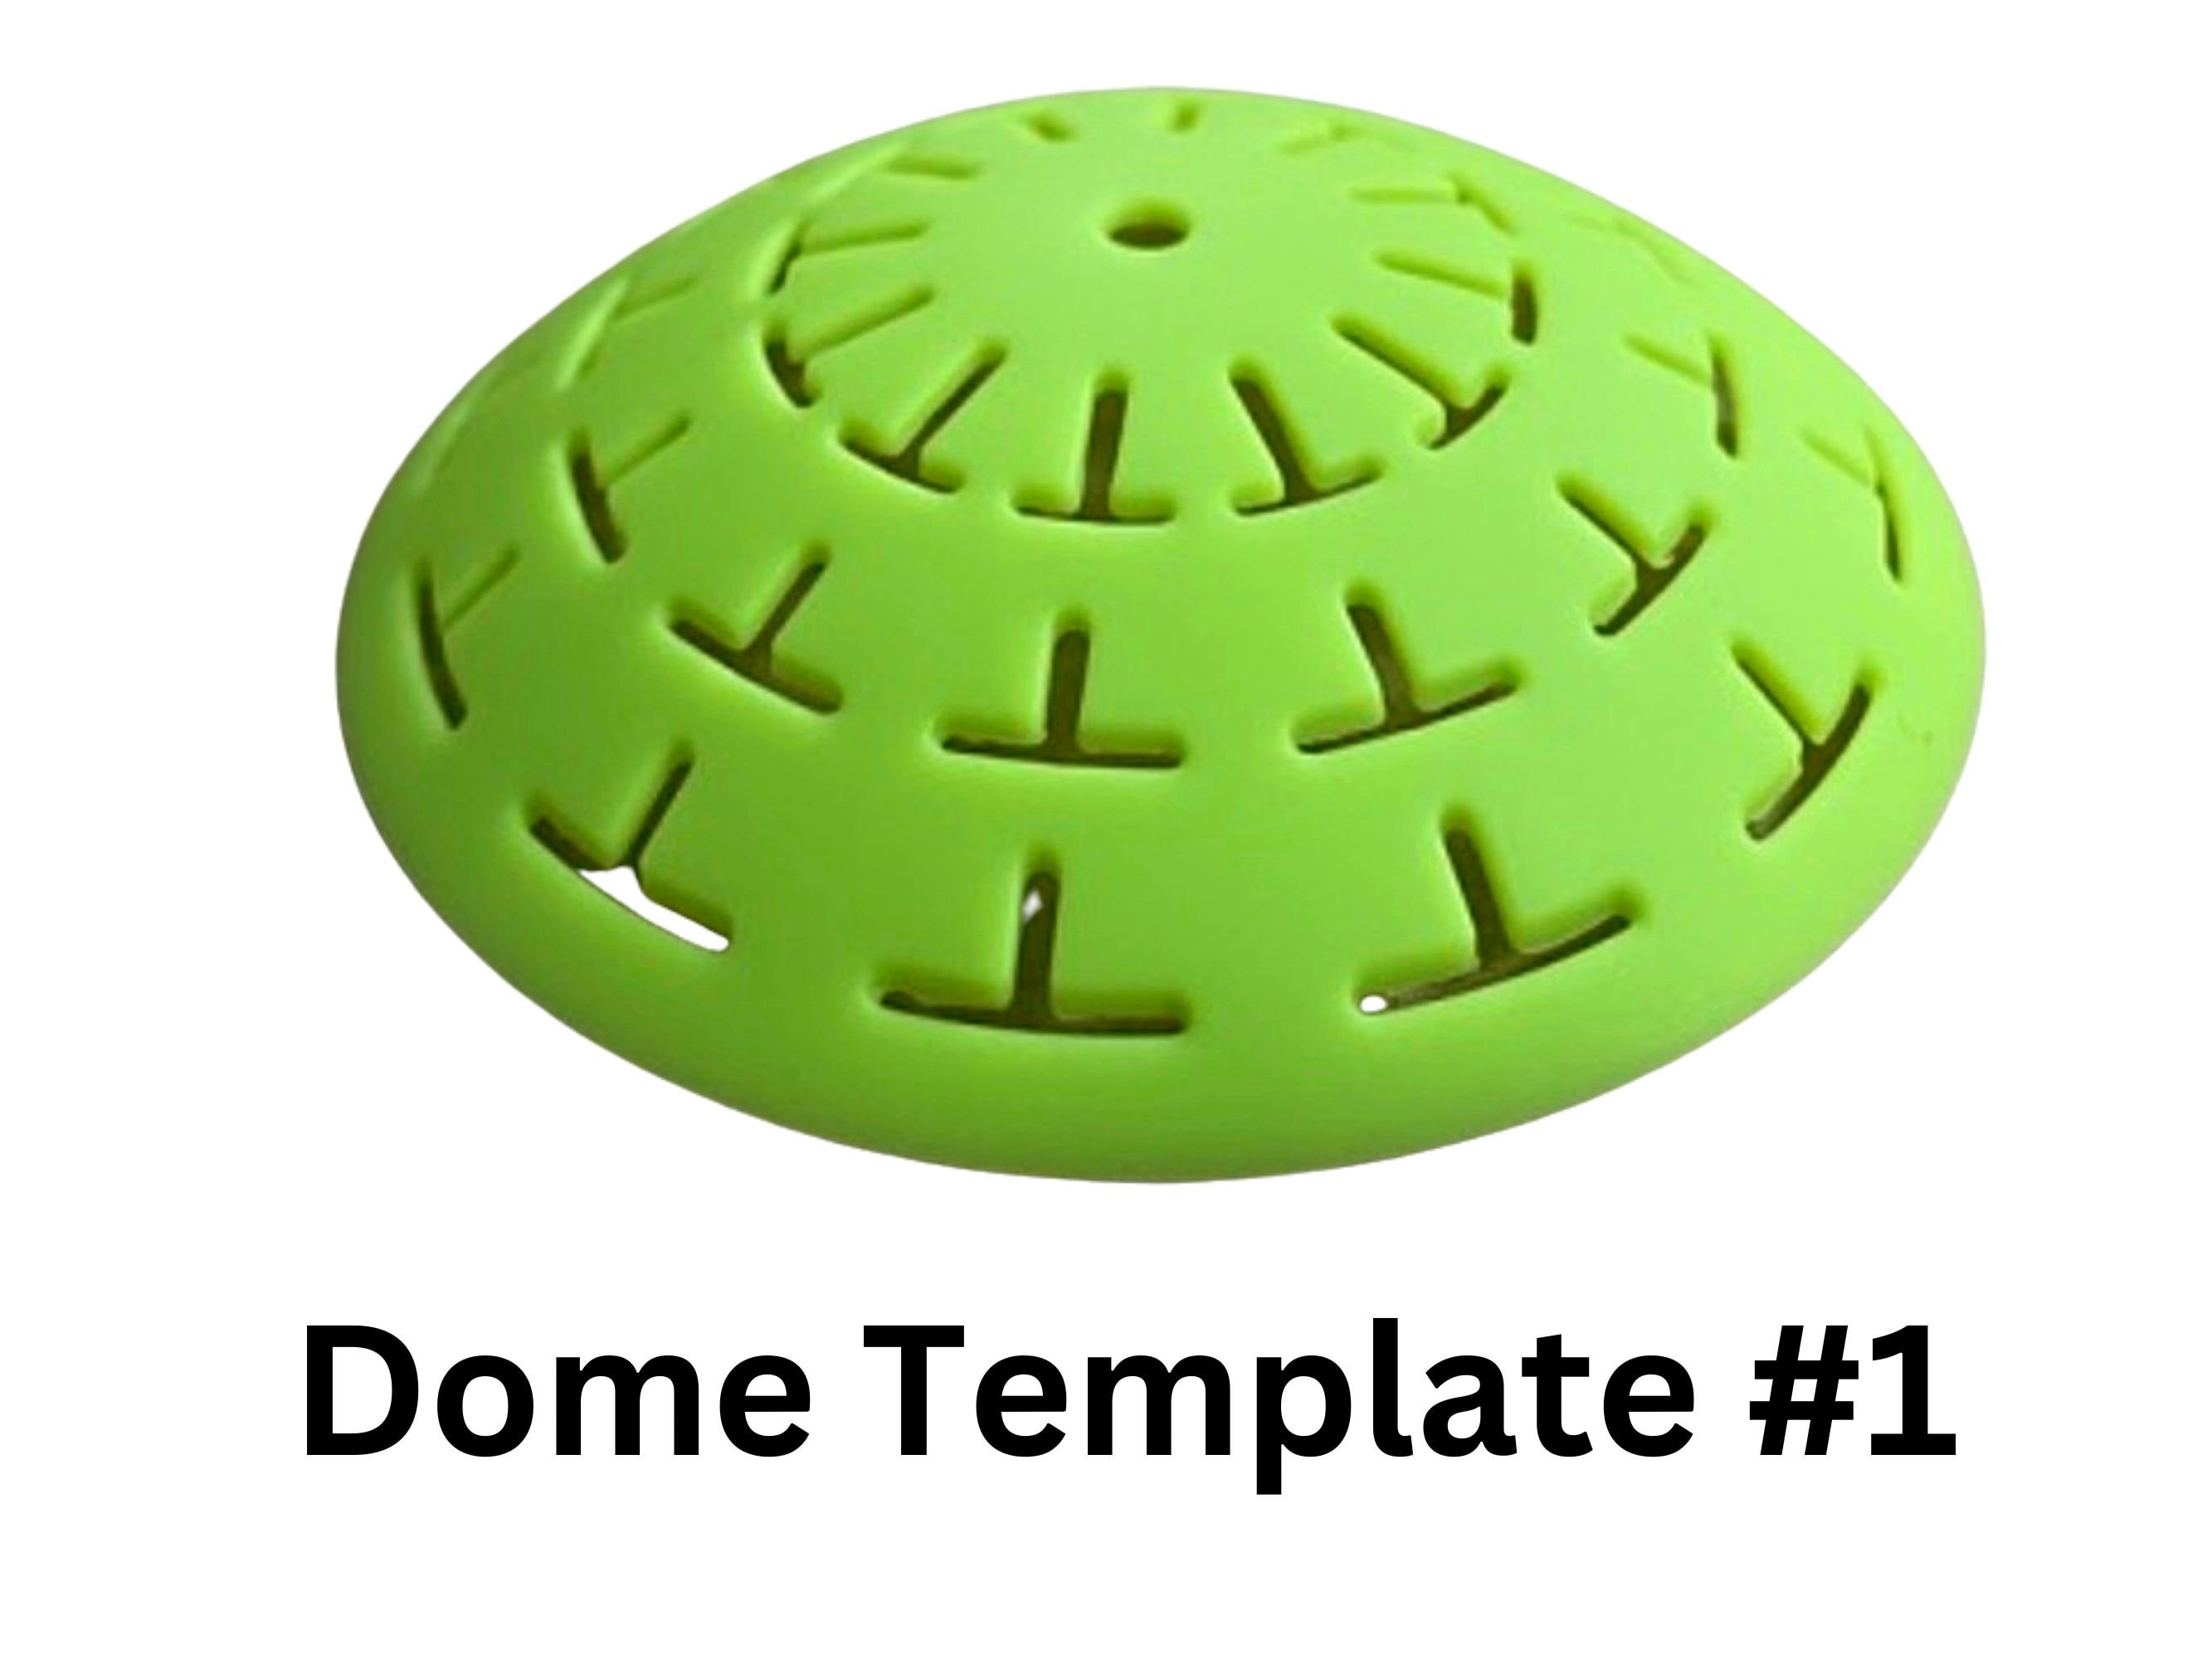 Dome Template 2 flexible silicone stencil 16 segments 3.7